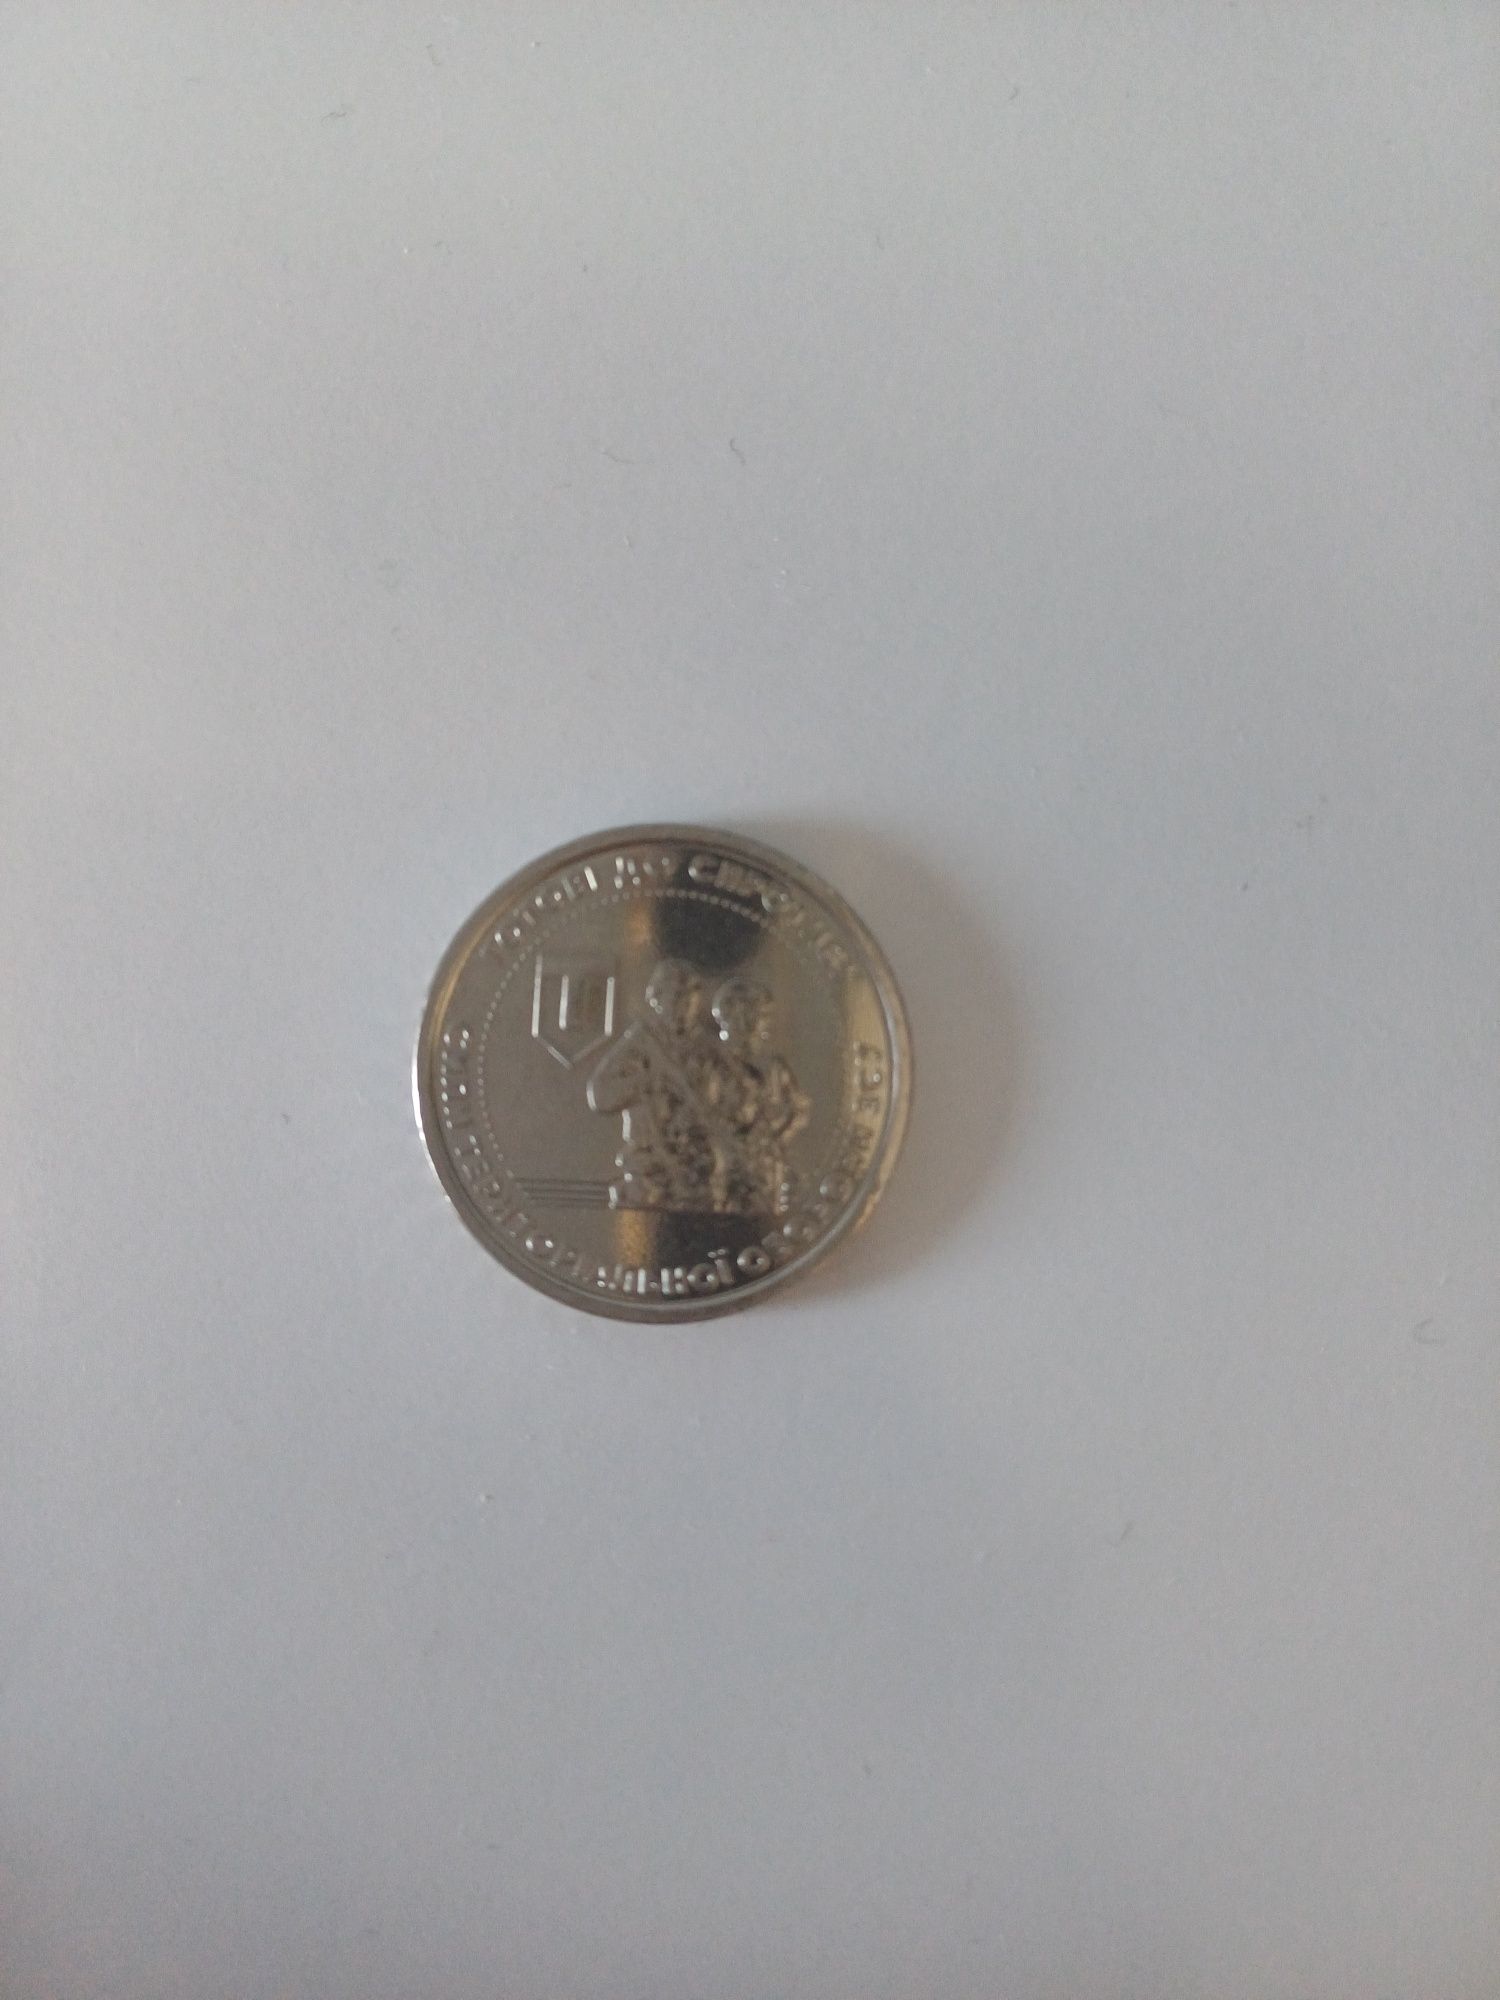 Монета ЗСУ 10 грн